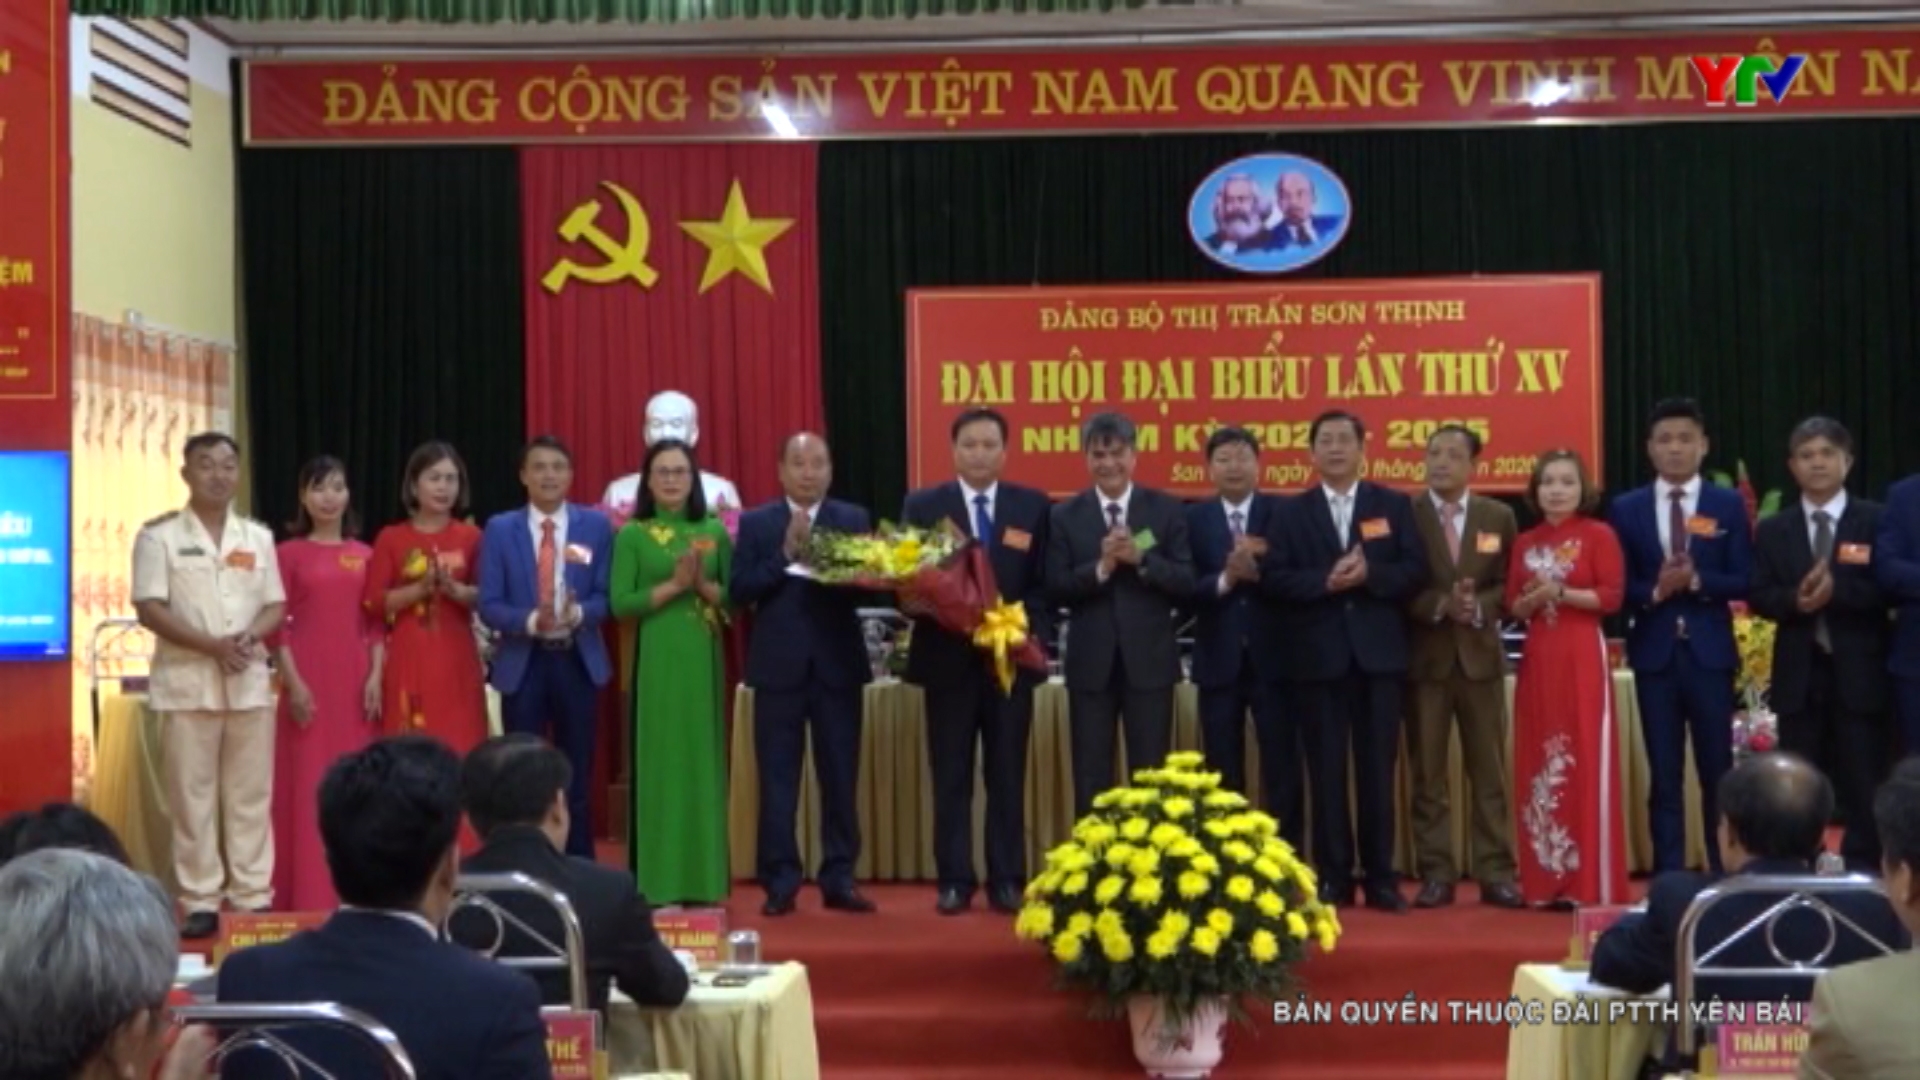 Đảng bộ thị trấn Sơn Thịnh, huyện Văn Chấn tổ chức thành công Đại hội đại biểu lần thứ XV, nhiệm kỳ 2020-2025